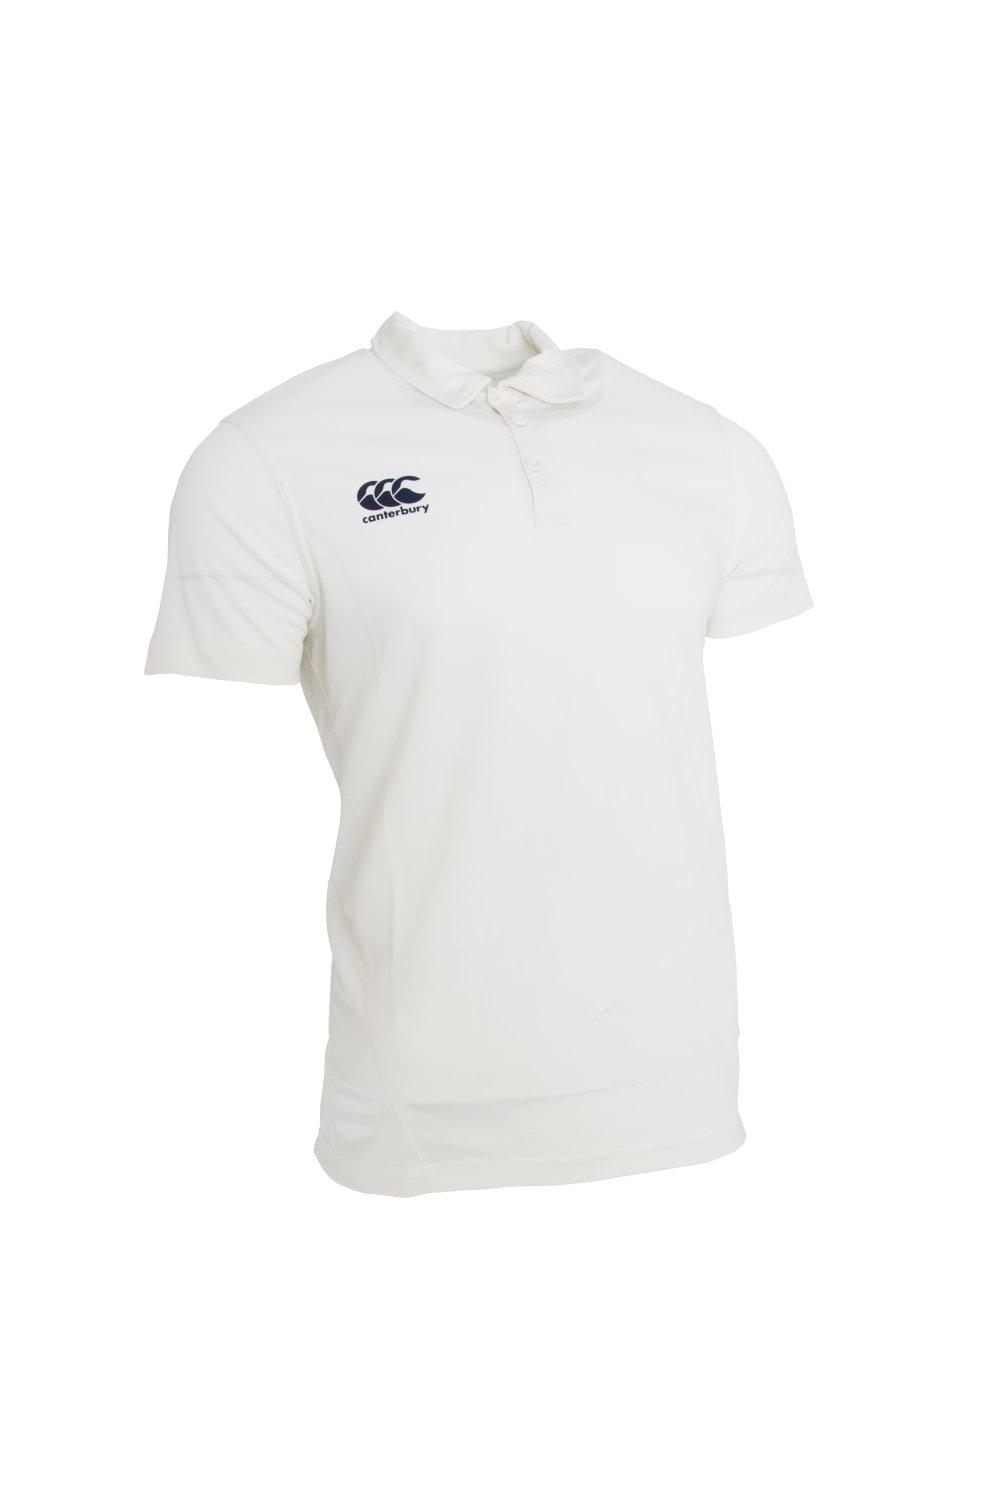 Рубашка для крикета с коротким рукавом Canterbury, белый